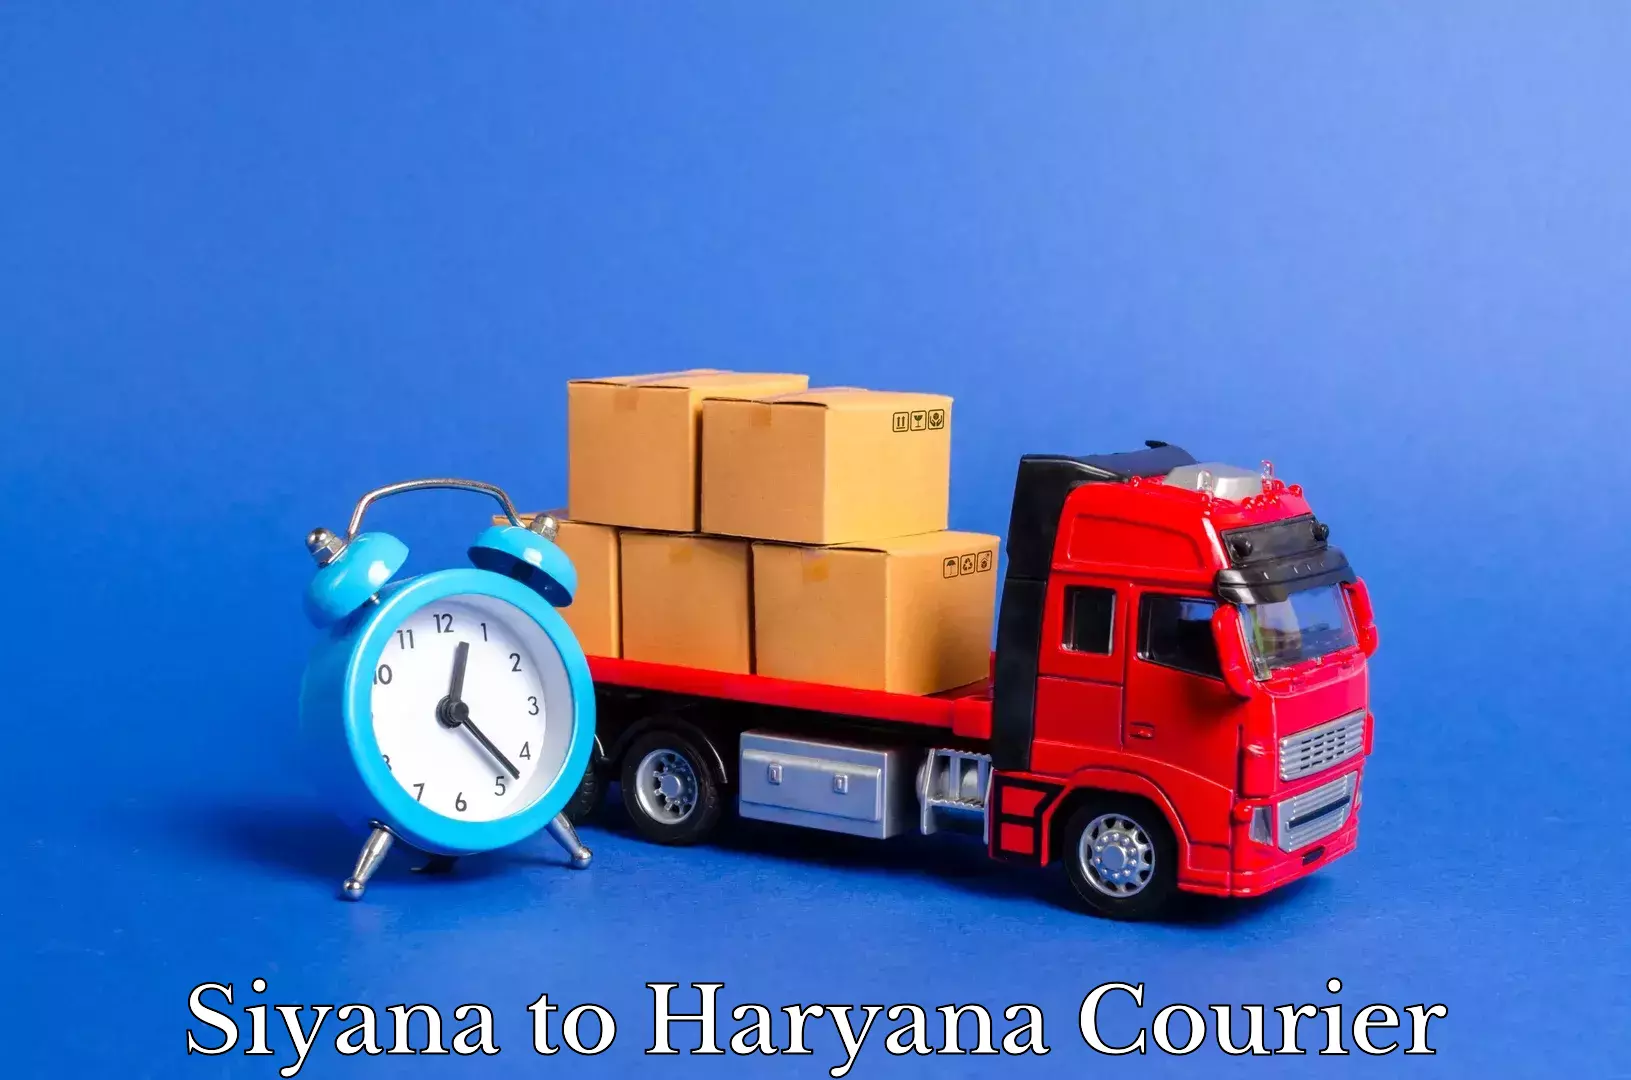 Furniture moving experts Siyana to Haryana